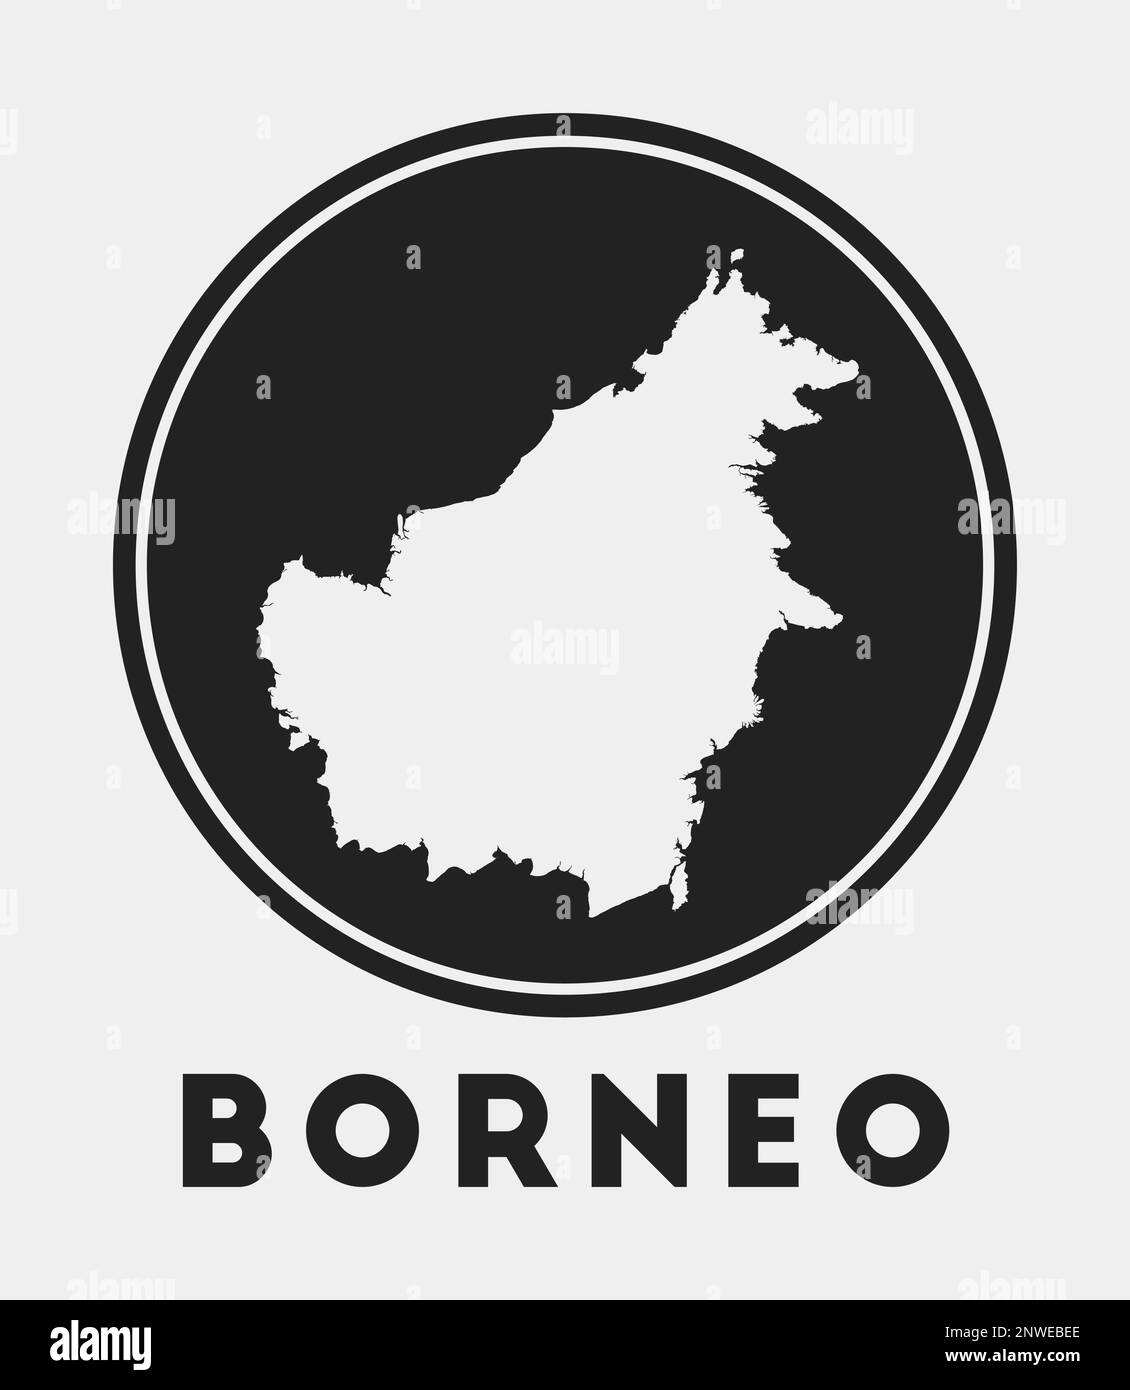 Icona del Borneo. Logo rotondo con mappa dell'isola e titolo. Elegante distintivo Borneo con mappa. Illustrazione vettoriale. Illustrazione Vettoriale